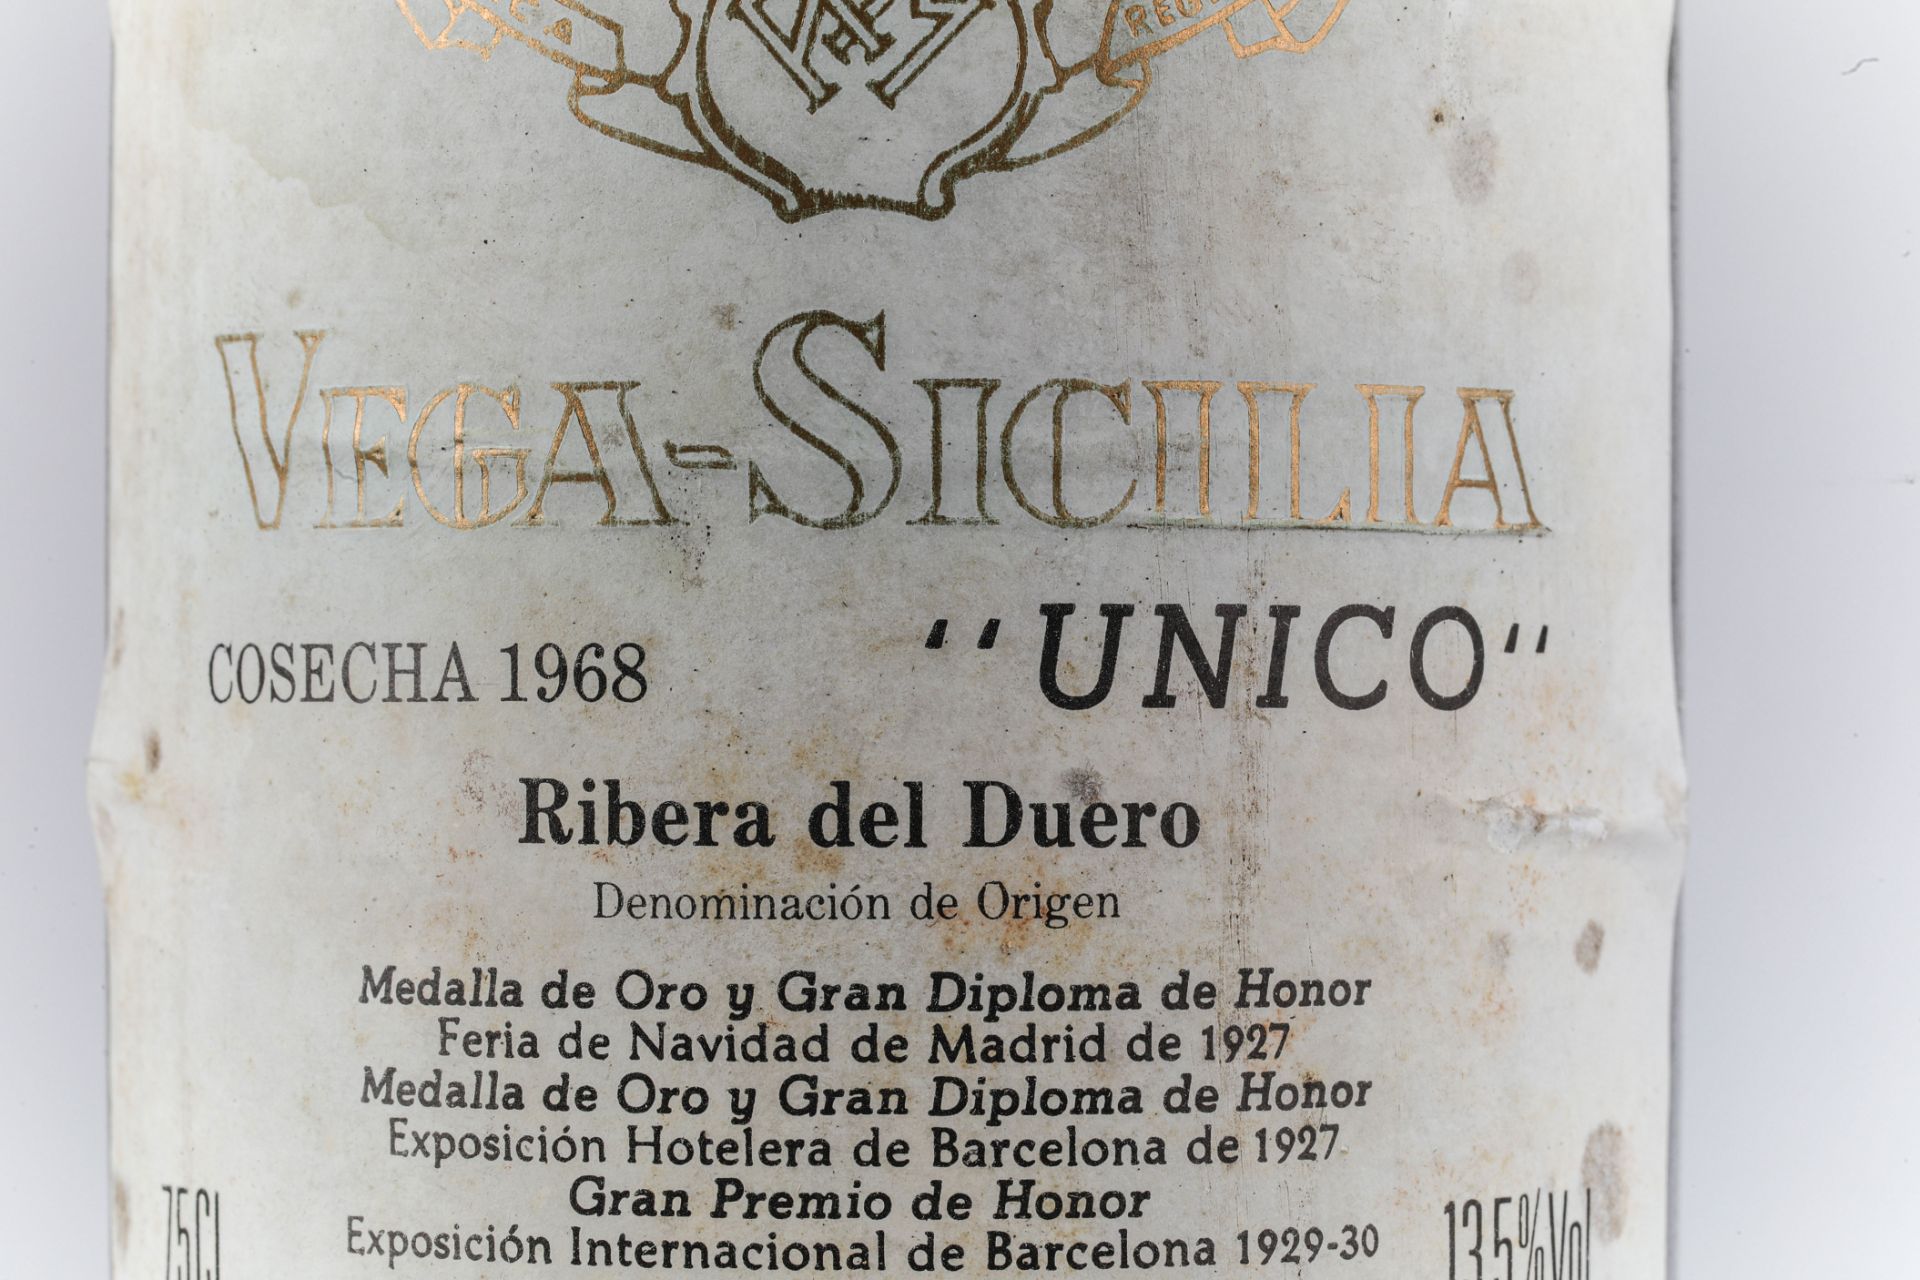 VEGA SICILIA UNICO. 1968. Ribera del Duero. Bouteille N°32498 sur production 45 300 bouteilles. - Image 3 of 6